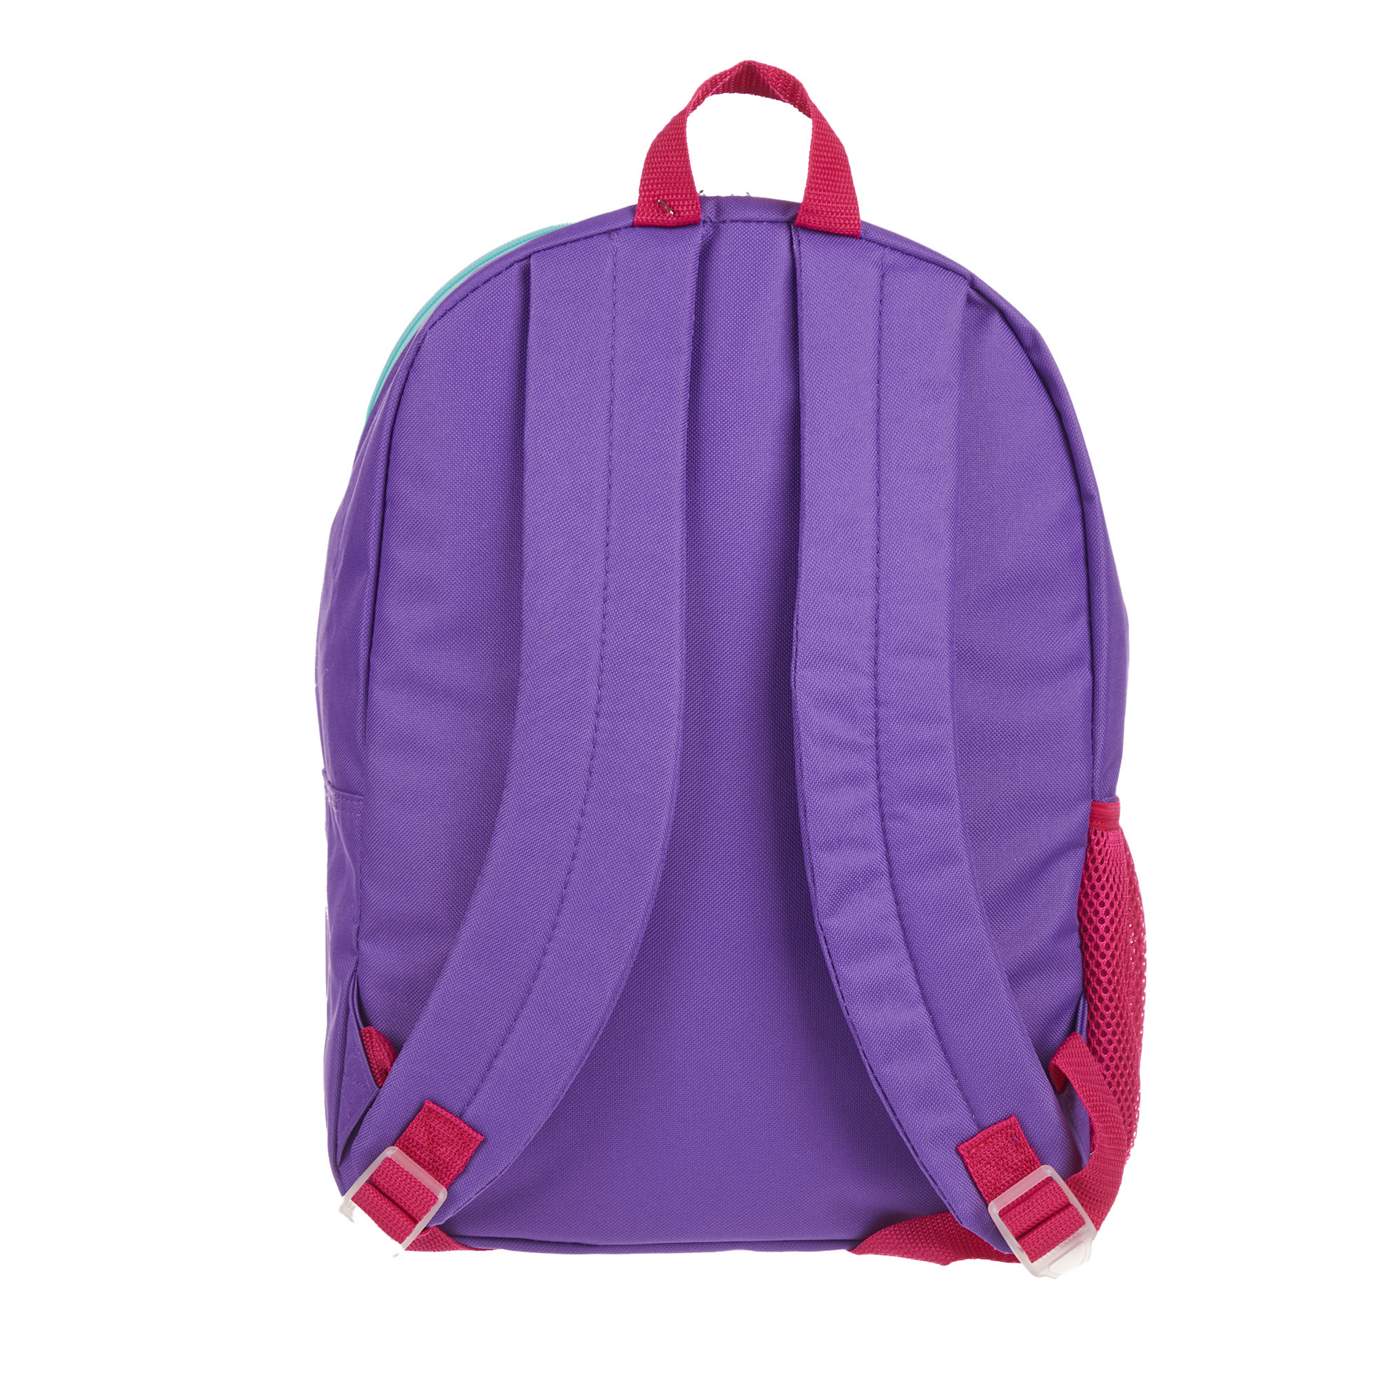 Disney Encanto Backpack & Lunch Bag Set; image 3 of 4